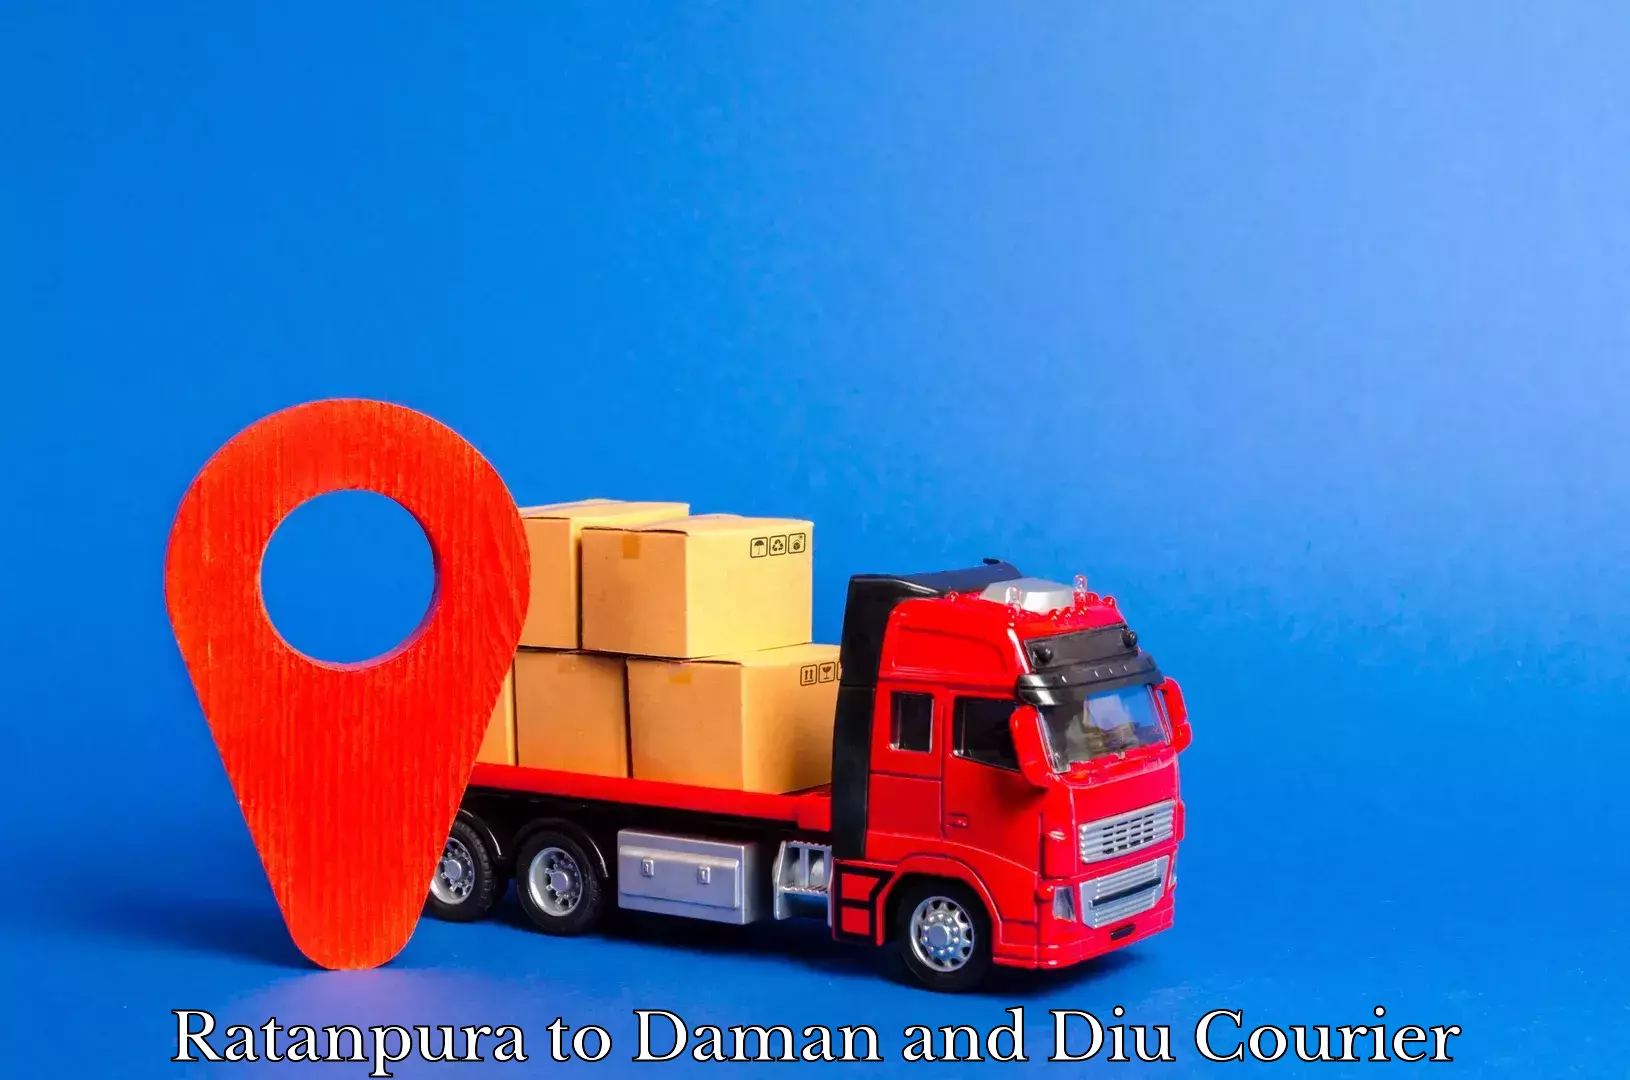 Courier service partnerships Ratanpura to Daman and Diu